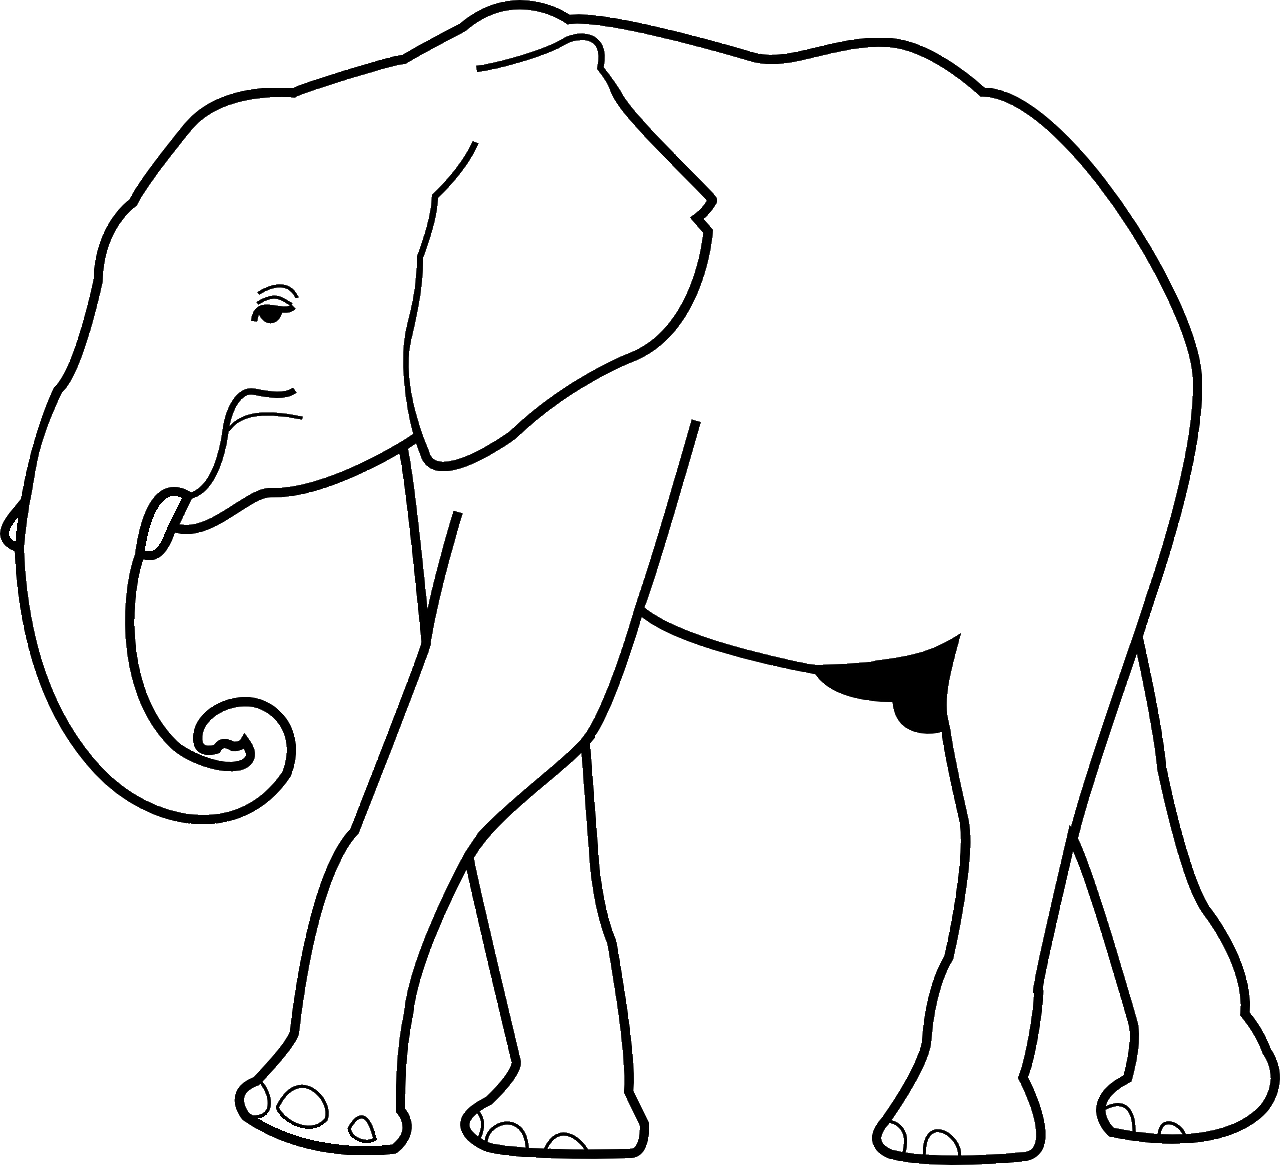 Disegno da colorare di elefante africano profilo